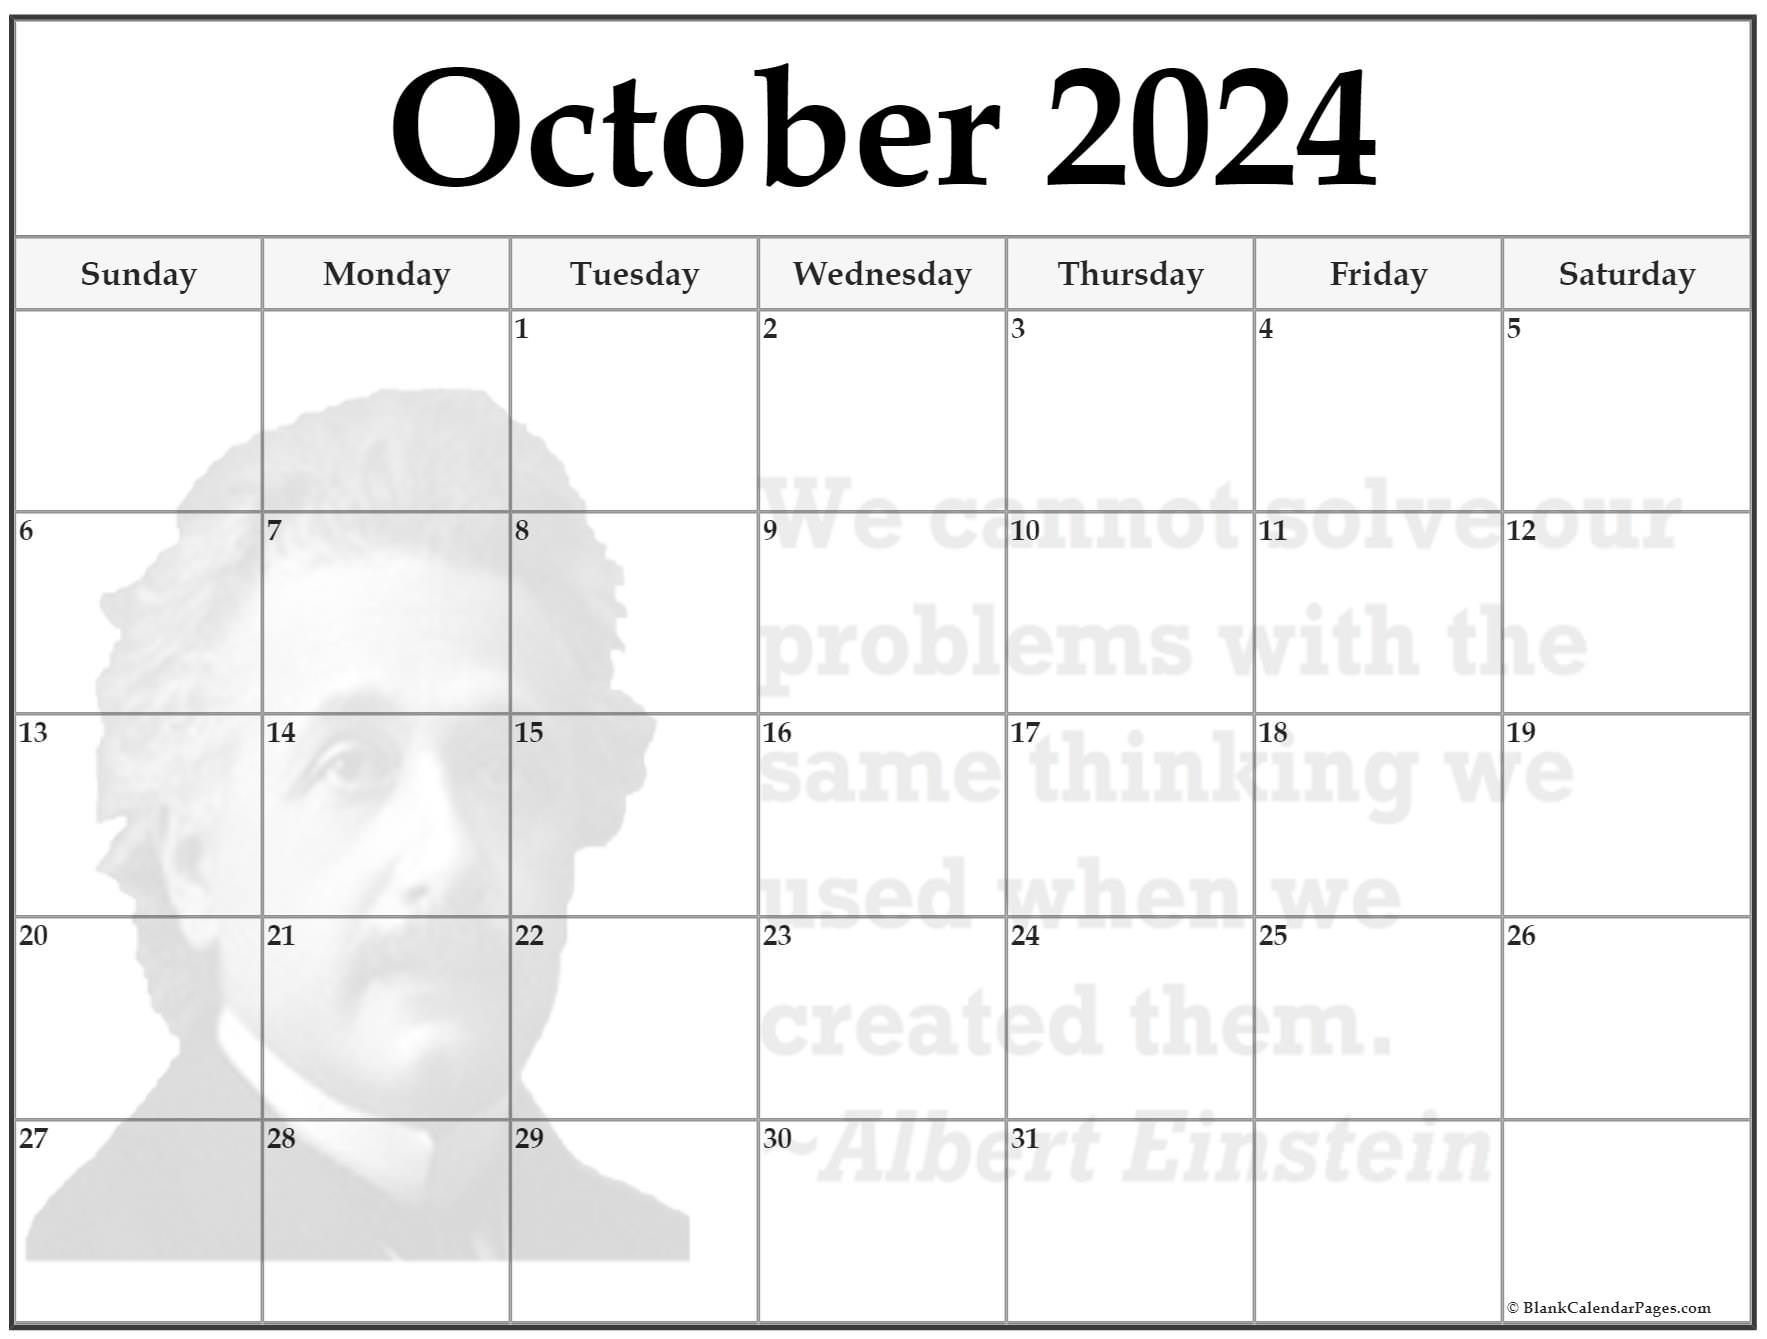 24+ October 2024 quote calendars